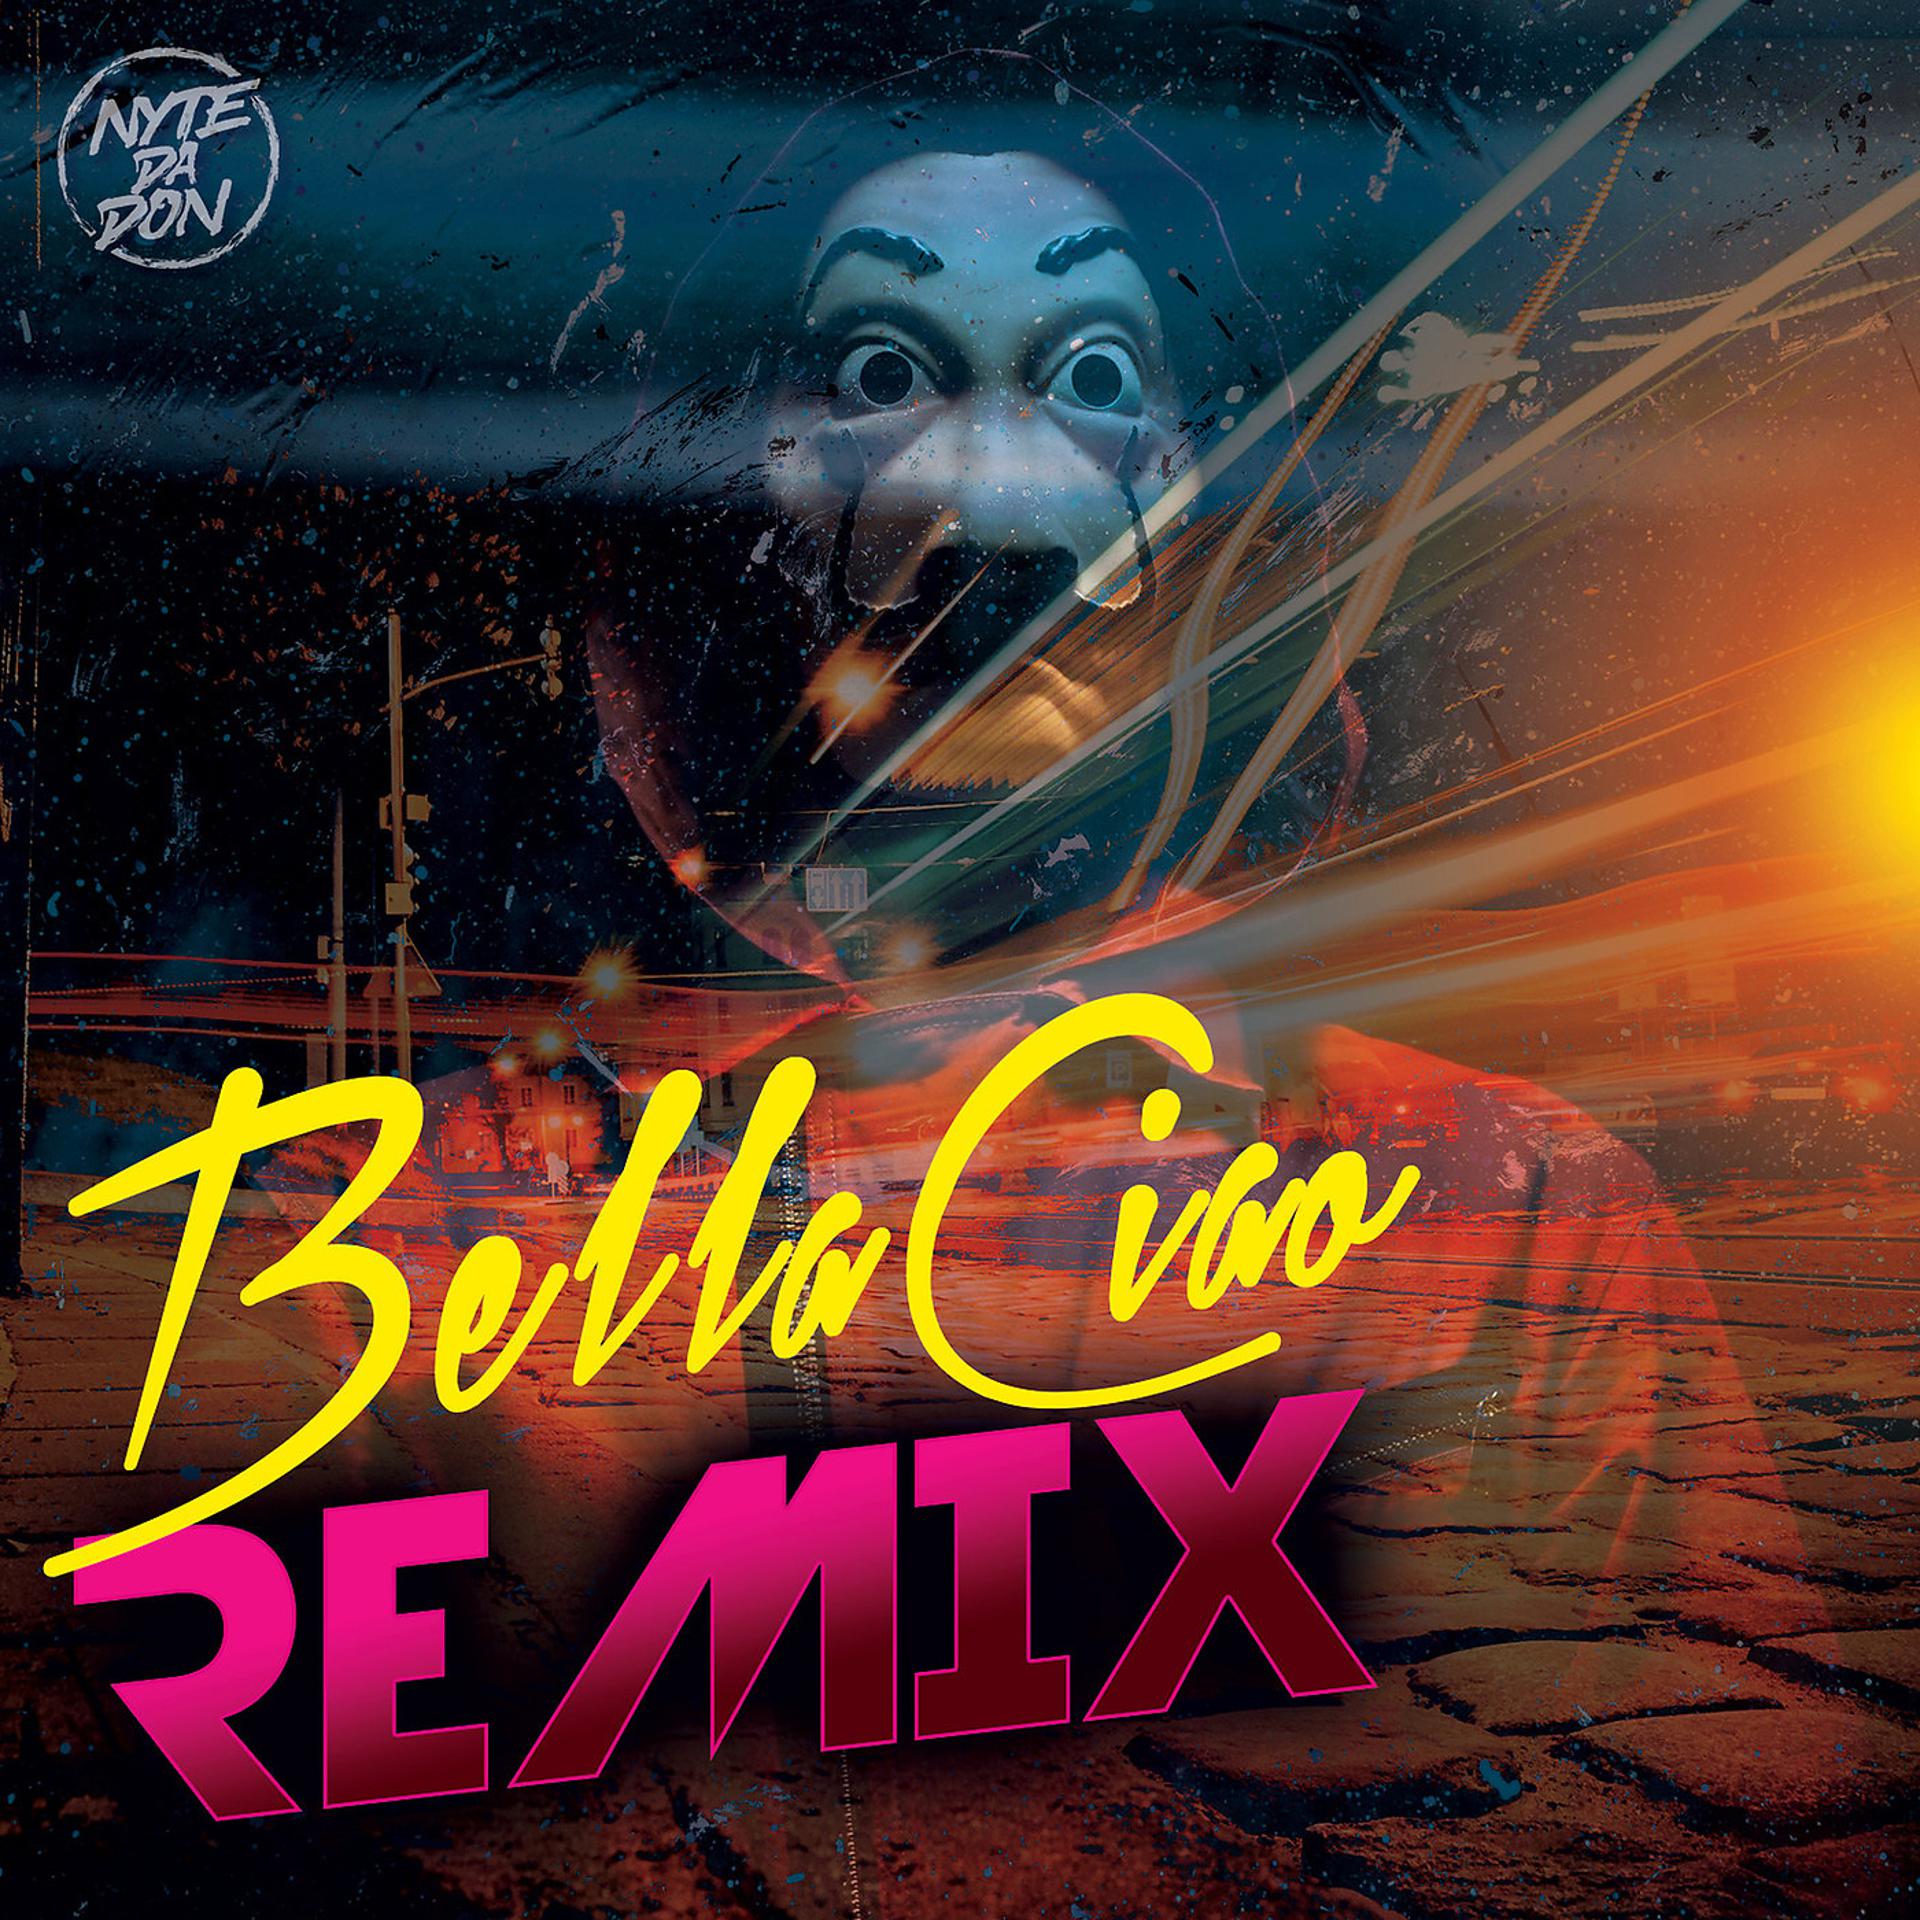 Постер альбома Bella Ciao (Remix)